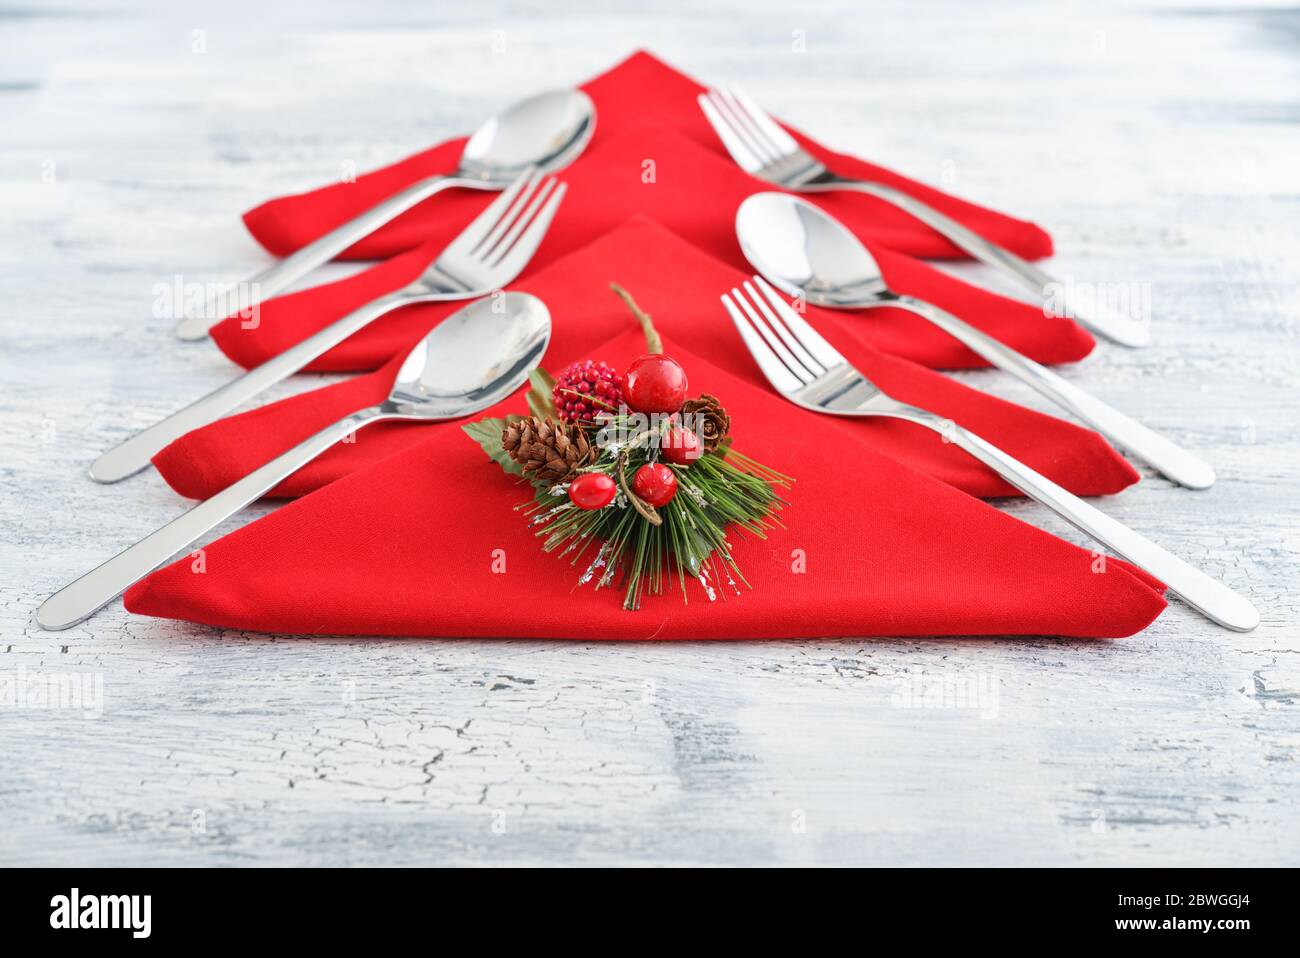 Serviettes rouges en forme d'arbre de Noël avec fourchettes et cuillères sur fond de bois Banque D'Images